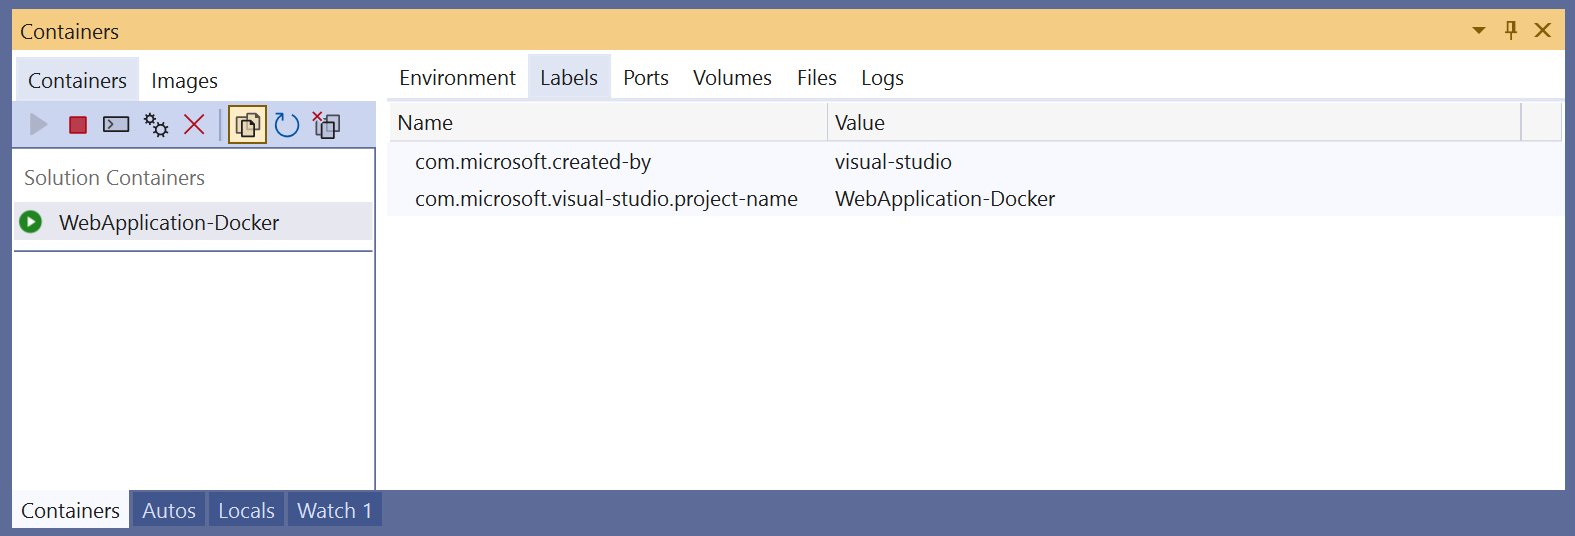 Capture d’écran de la fenêtre Conteneurs dans Visual Studio montrant l’onglet Étiquettes.